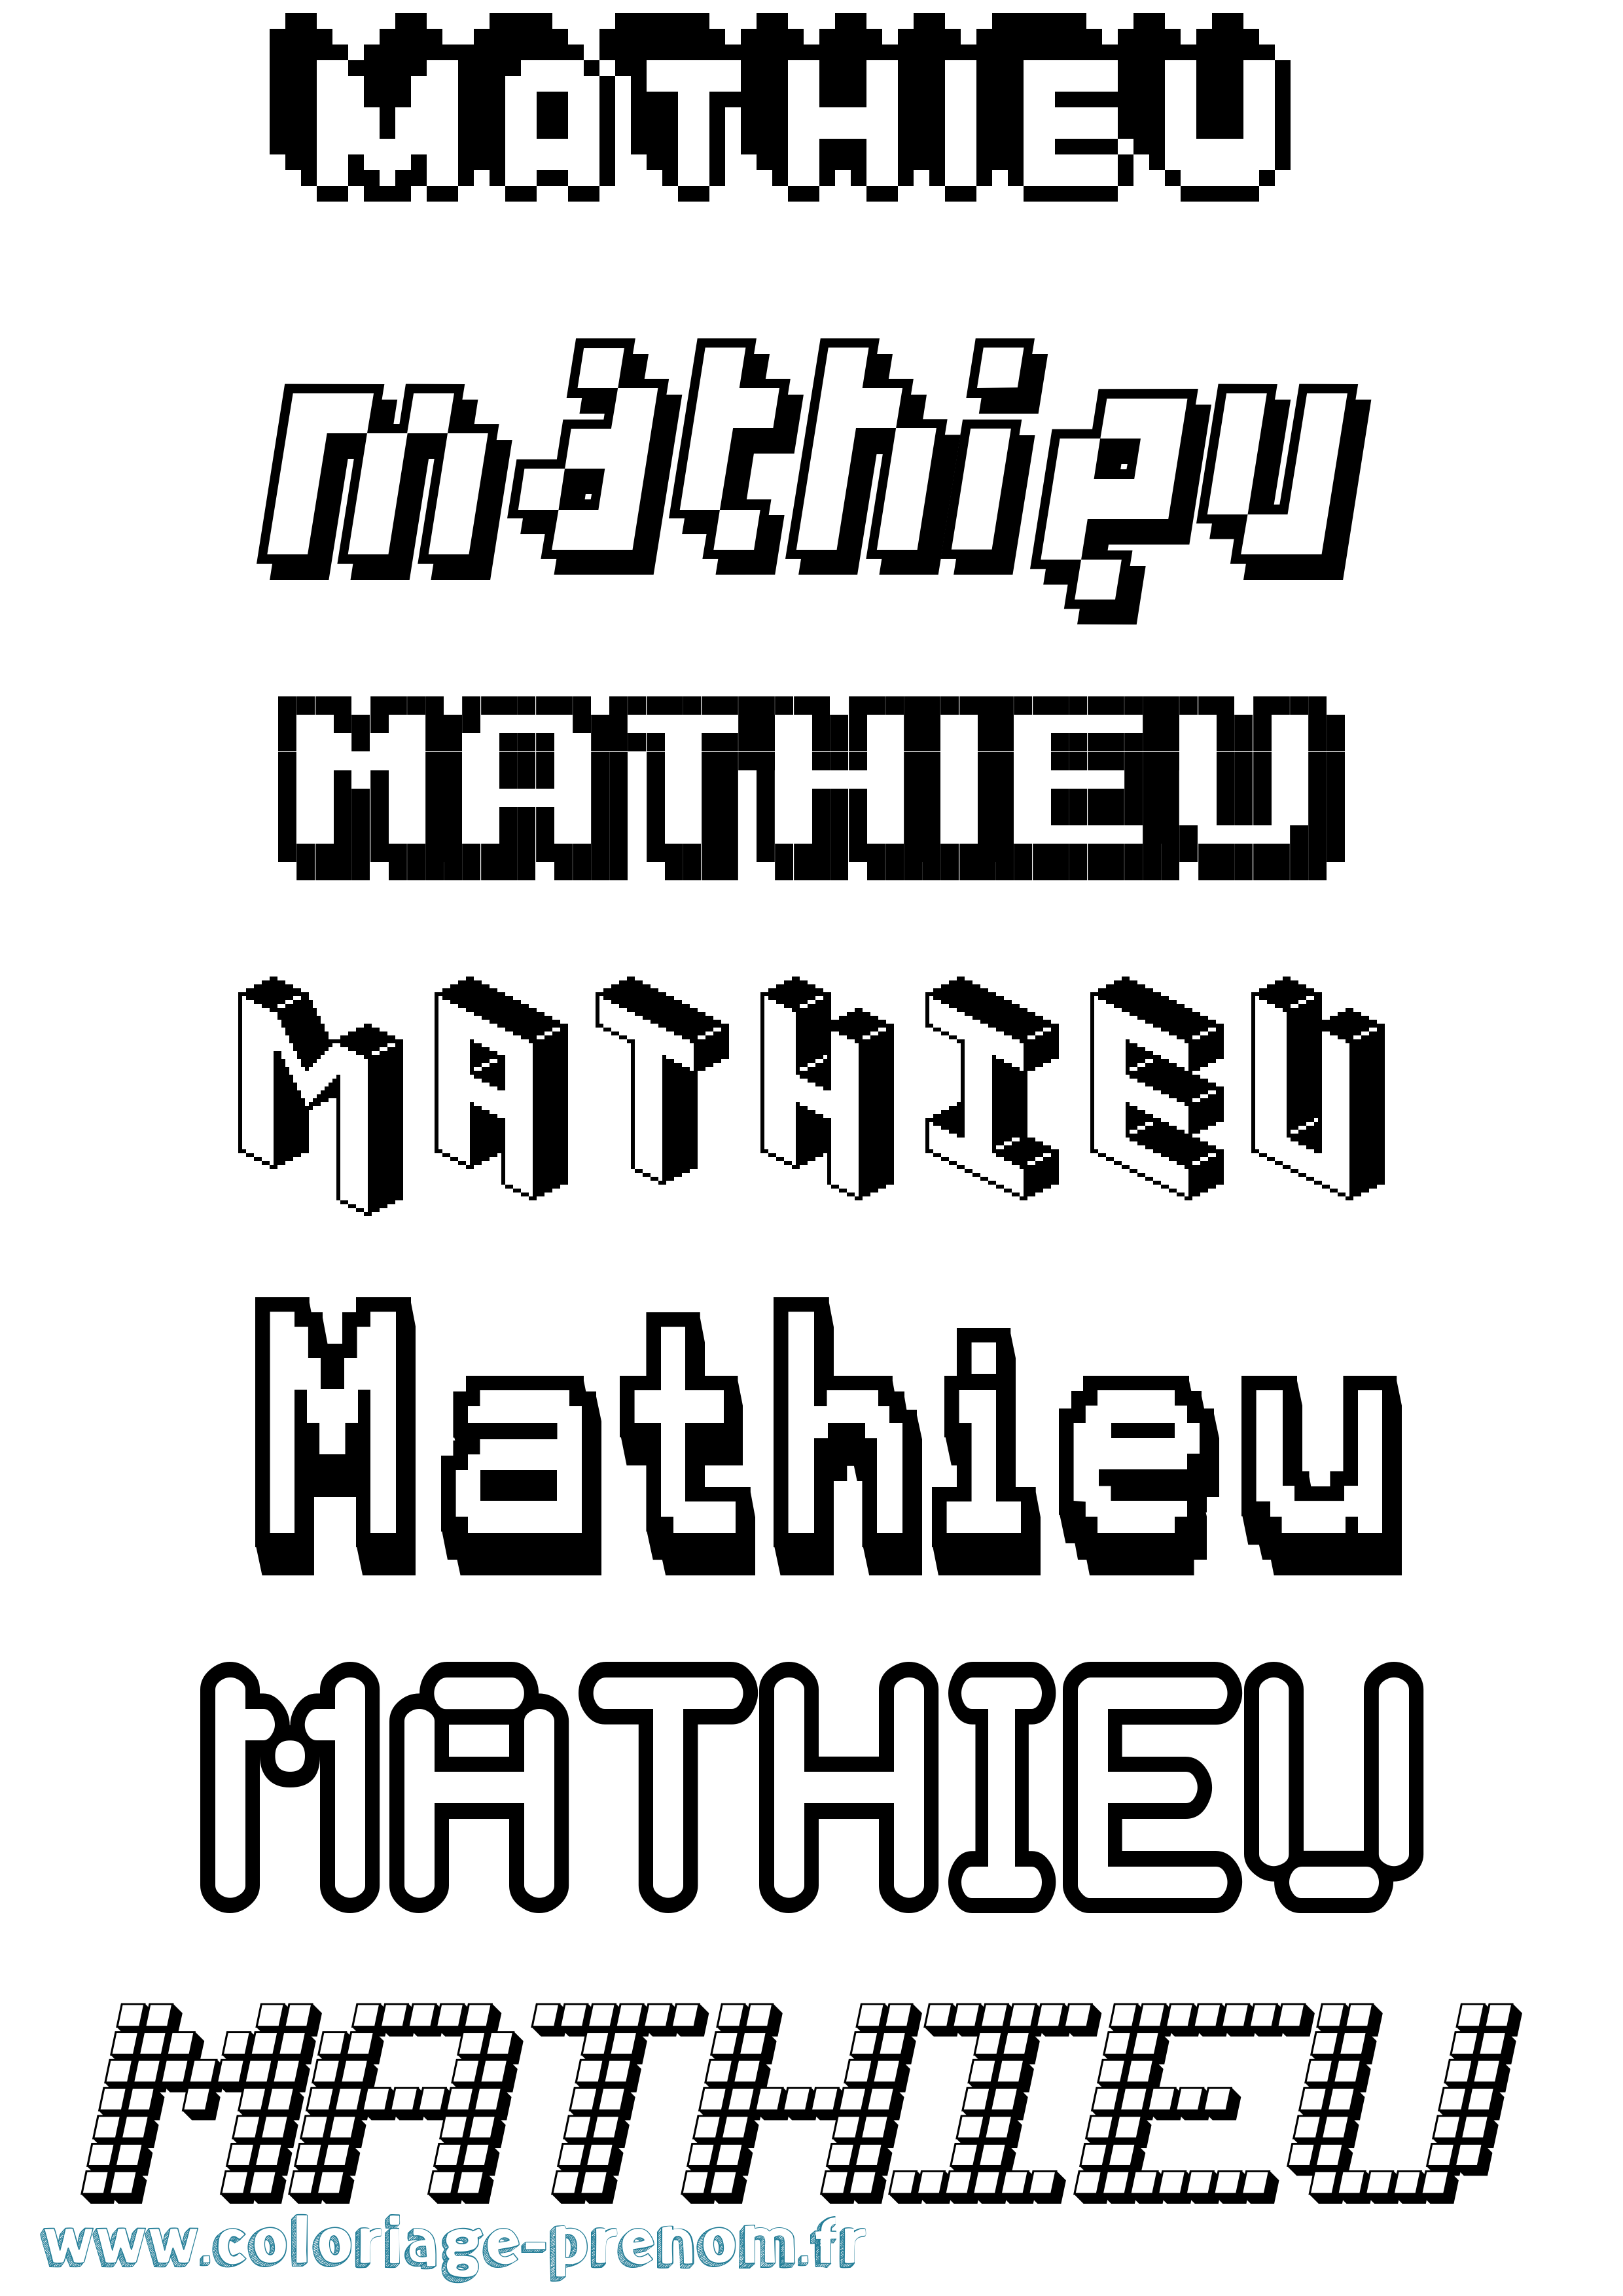 Coloriage prénom Mathieu Pixel